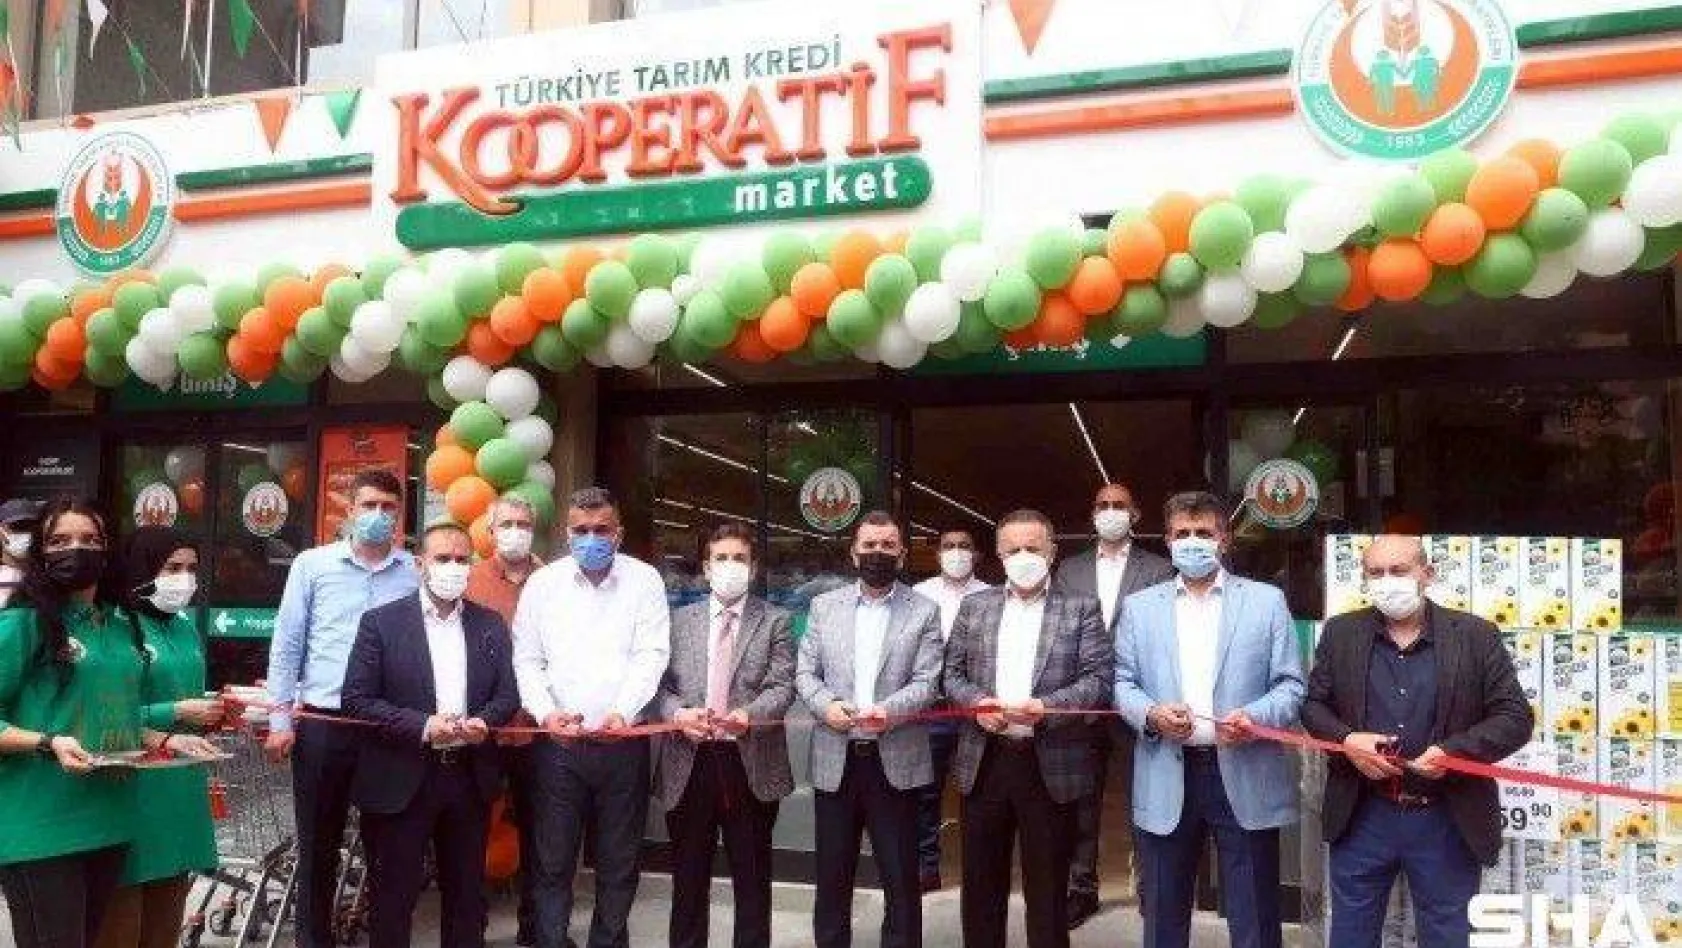 Bağcılar'da üçüncü Tarım Kredi Kooperatifi marketi açıldı